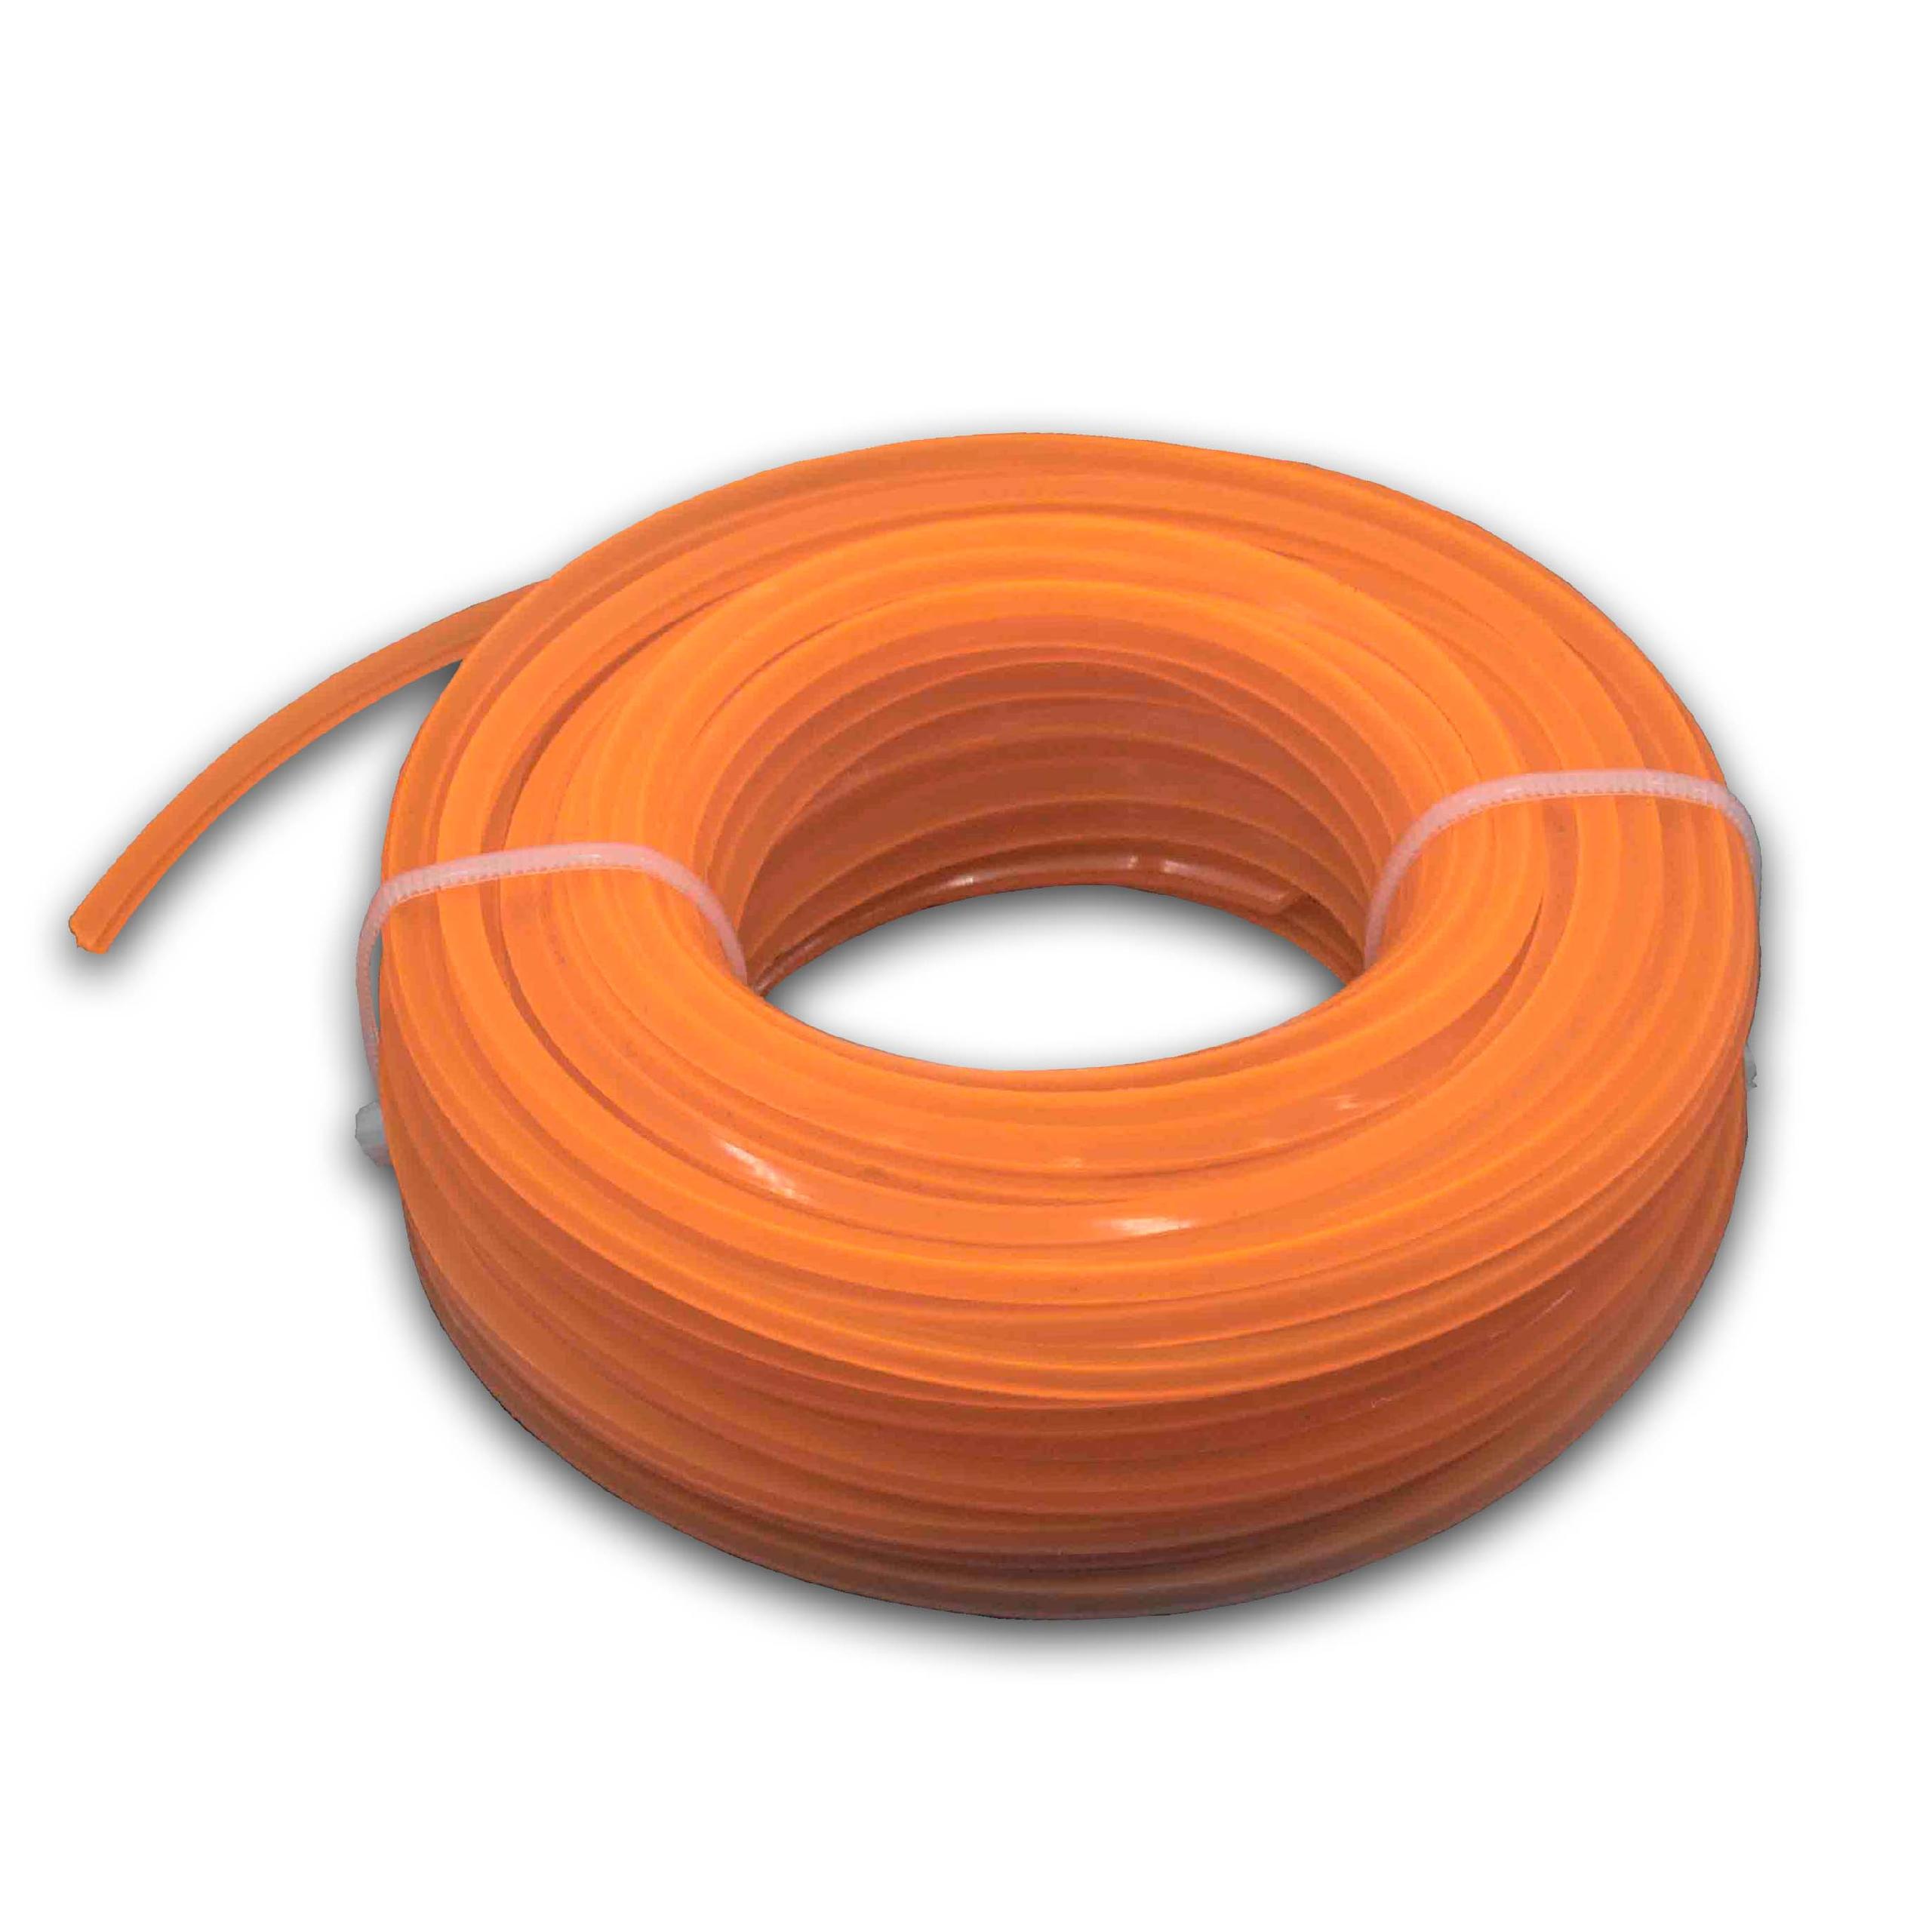 Fil pour débroussailleuse, tondeuse Bosch, Makita - Fil de coupe, orange, 2,4 mm x 15 m, carré